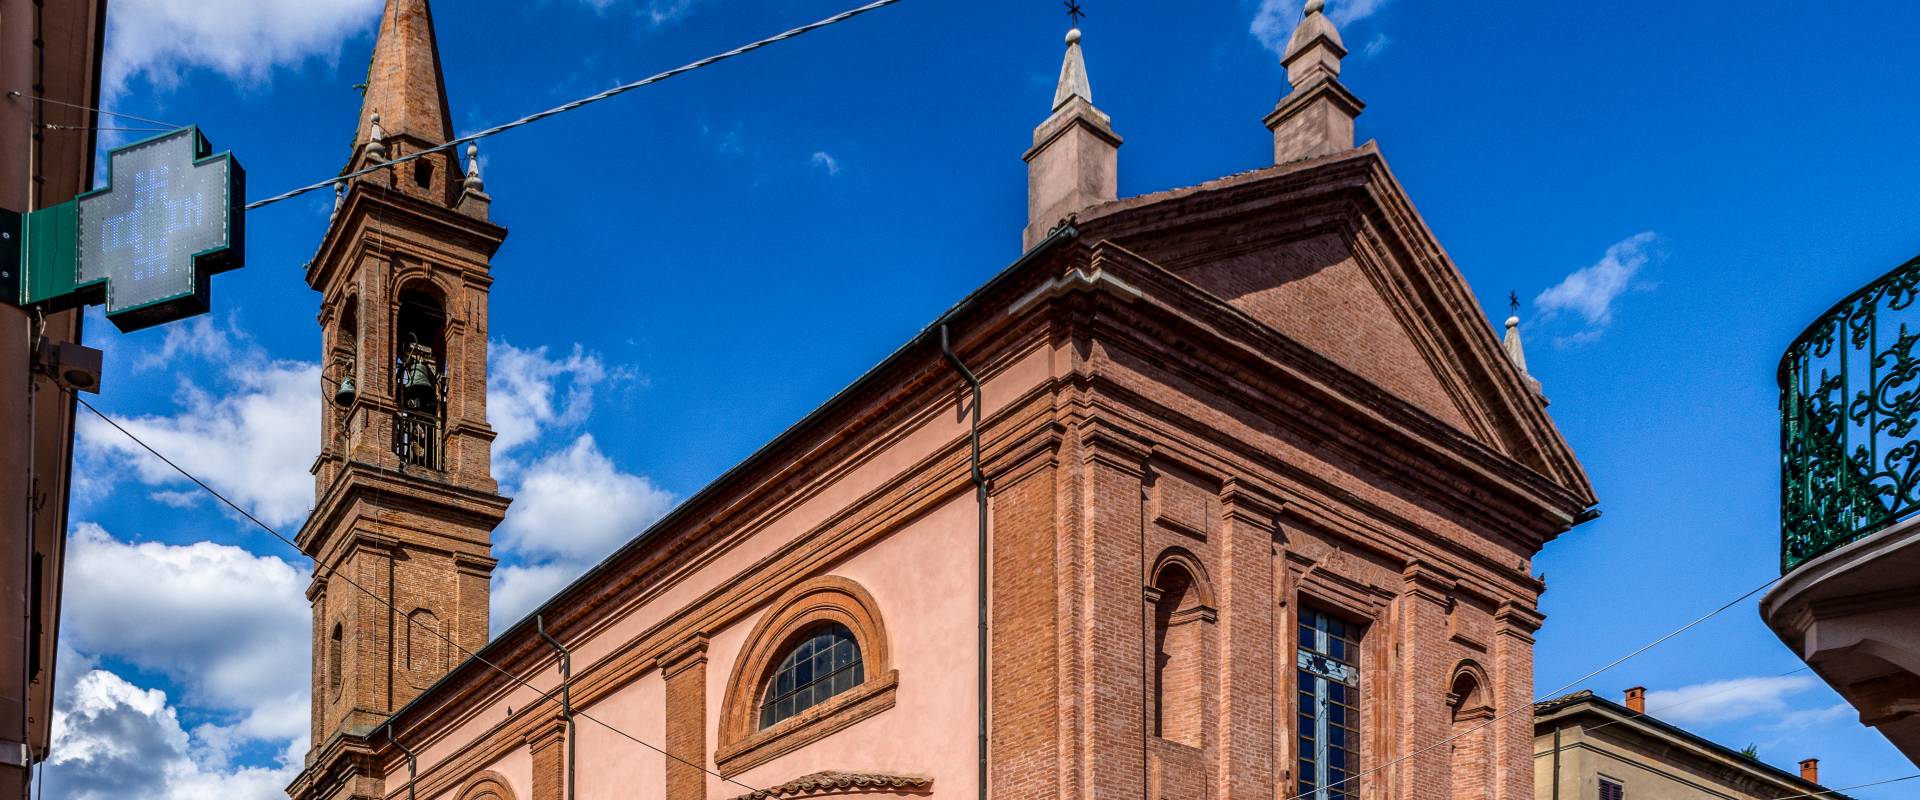 BnGEx "Chiesa del Rosario" Comacchio photo by Vanni Lazzari